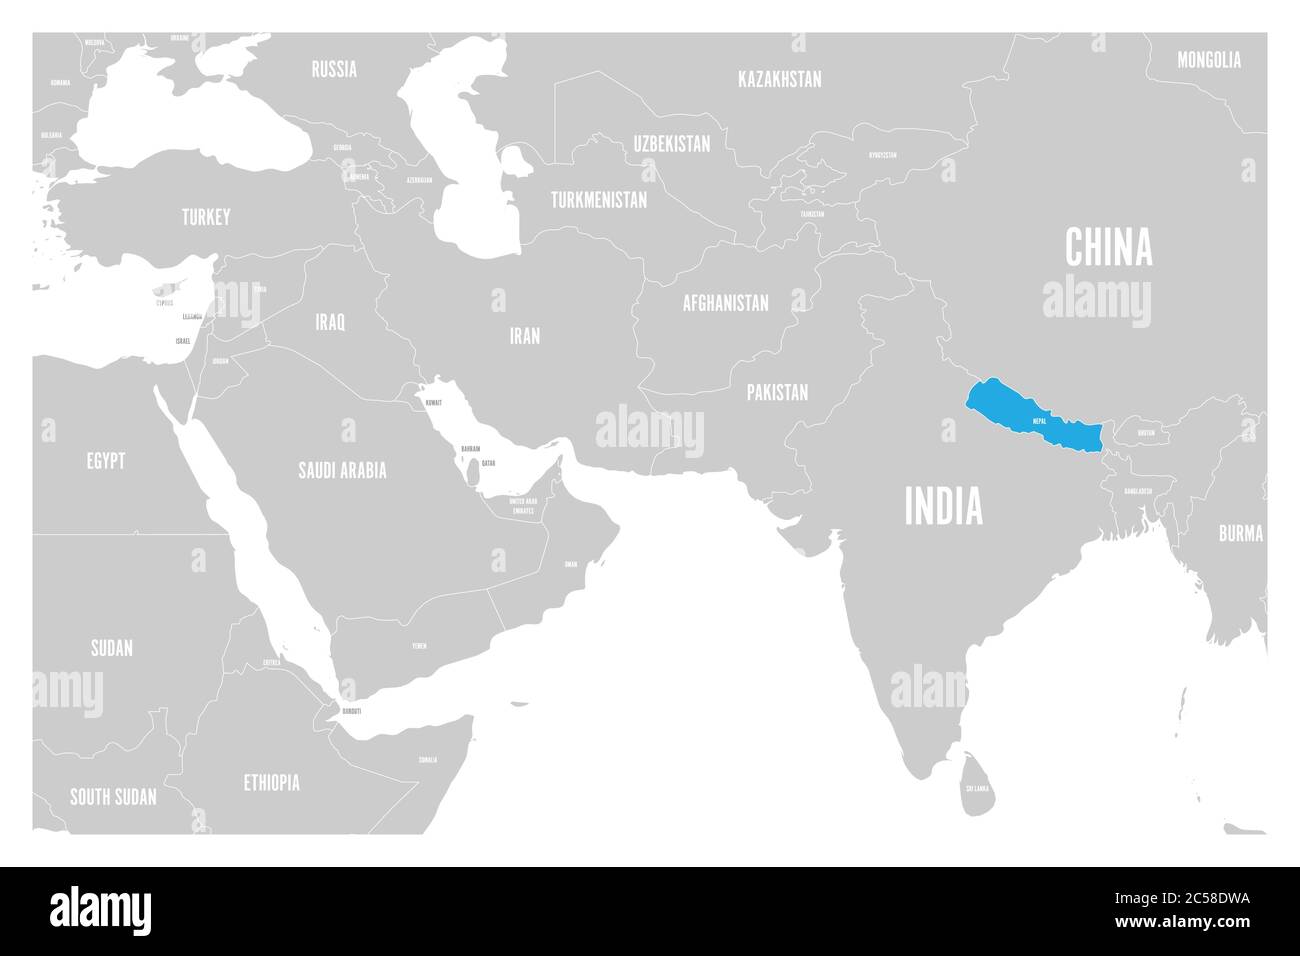 Nepal blau markiert in der politischen Karte von Südasien und dem Nahen Osten. Einfache flache Vektorkarte. Stock Vektor